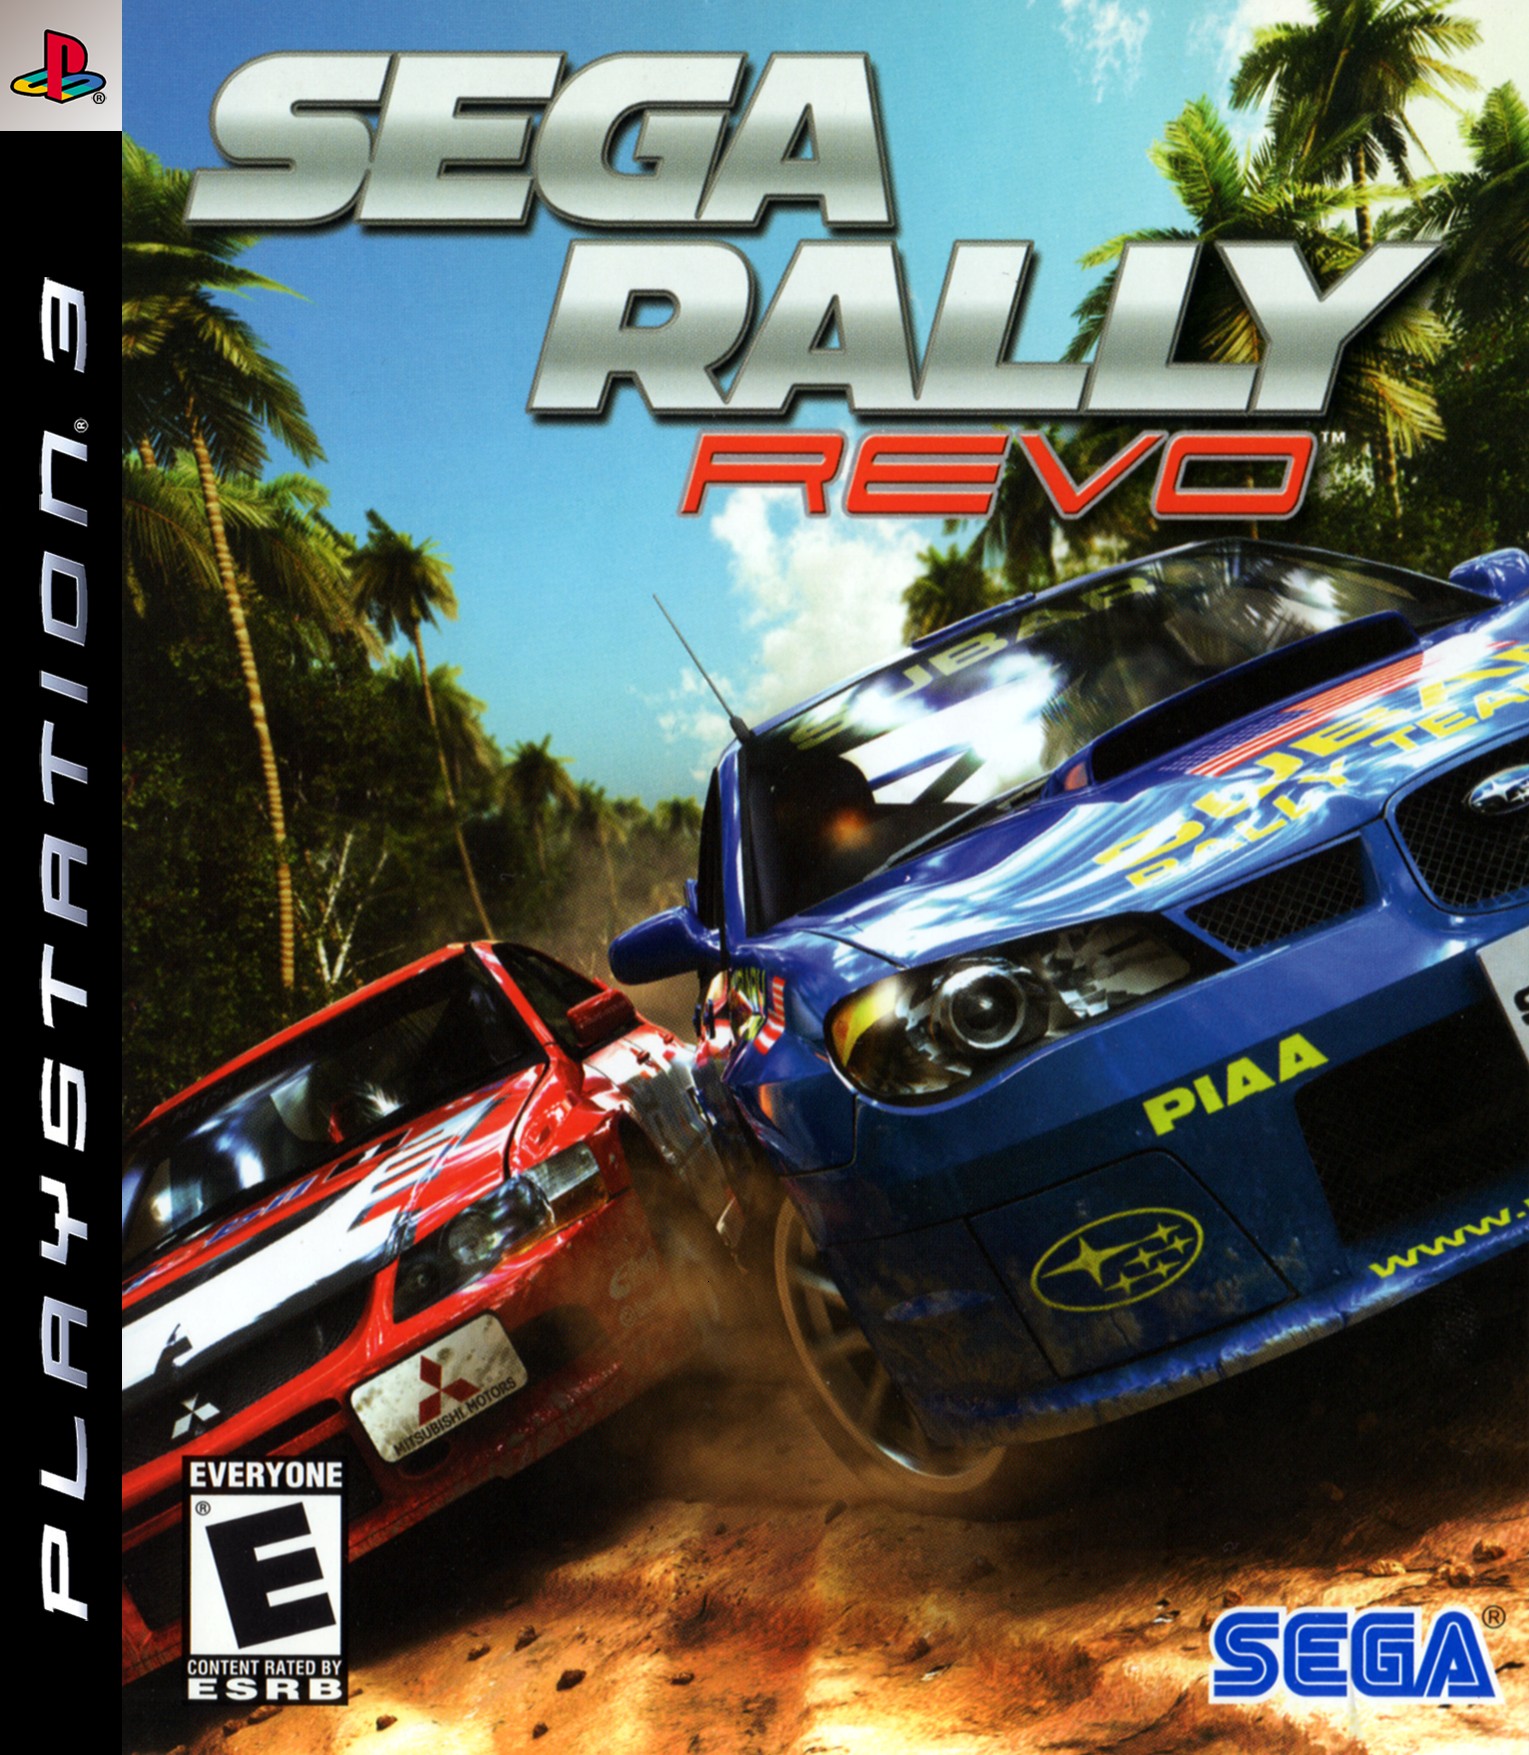 'Sega Rally: Revo'